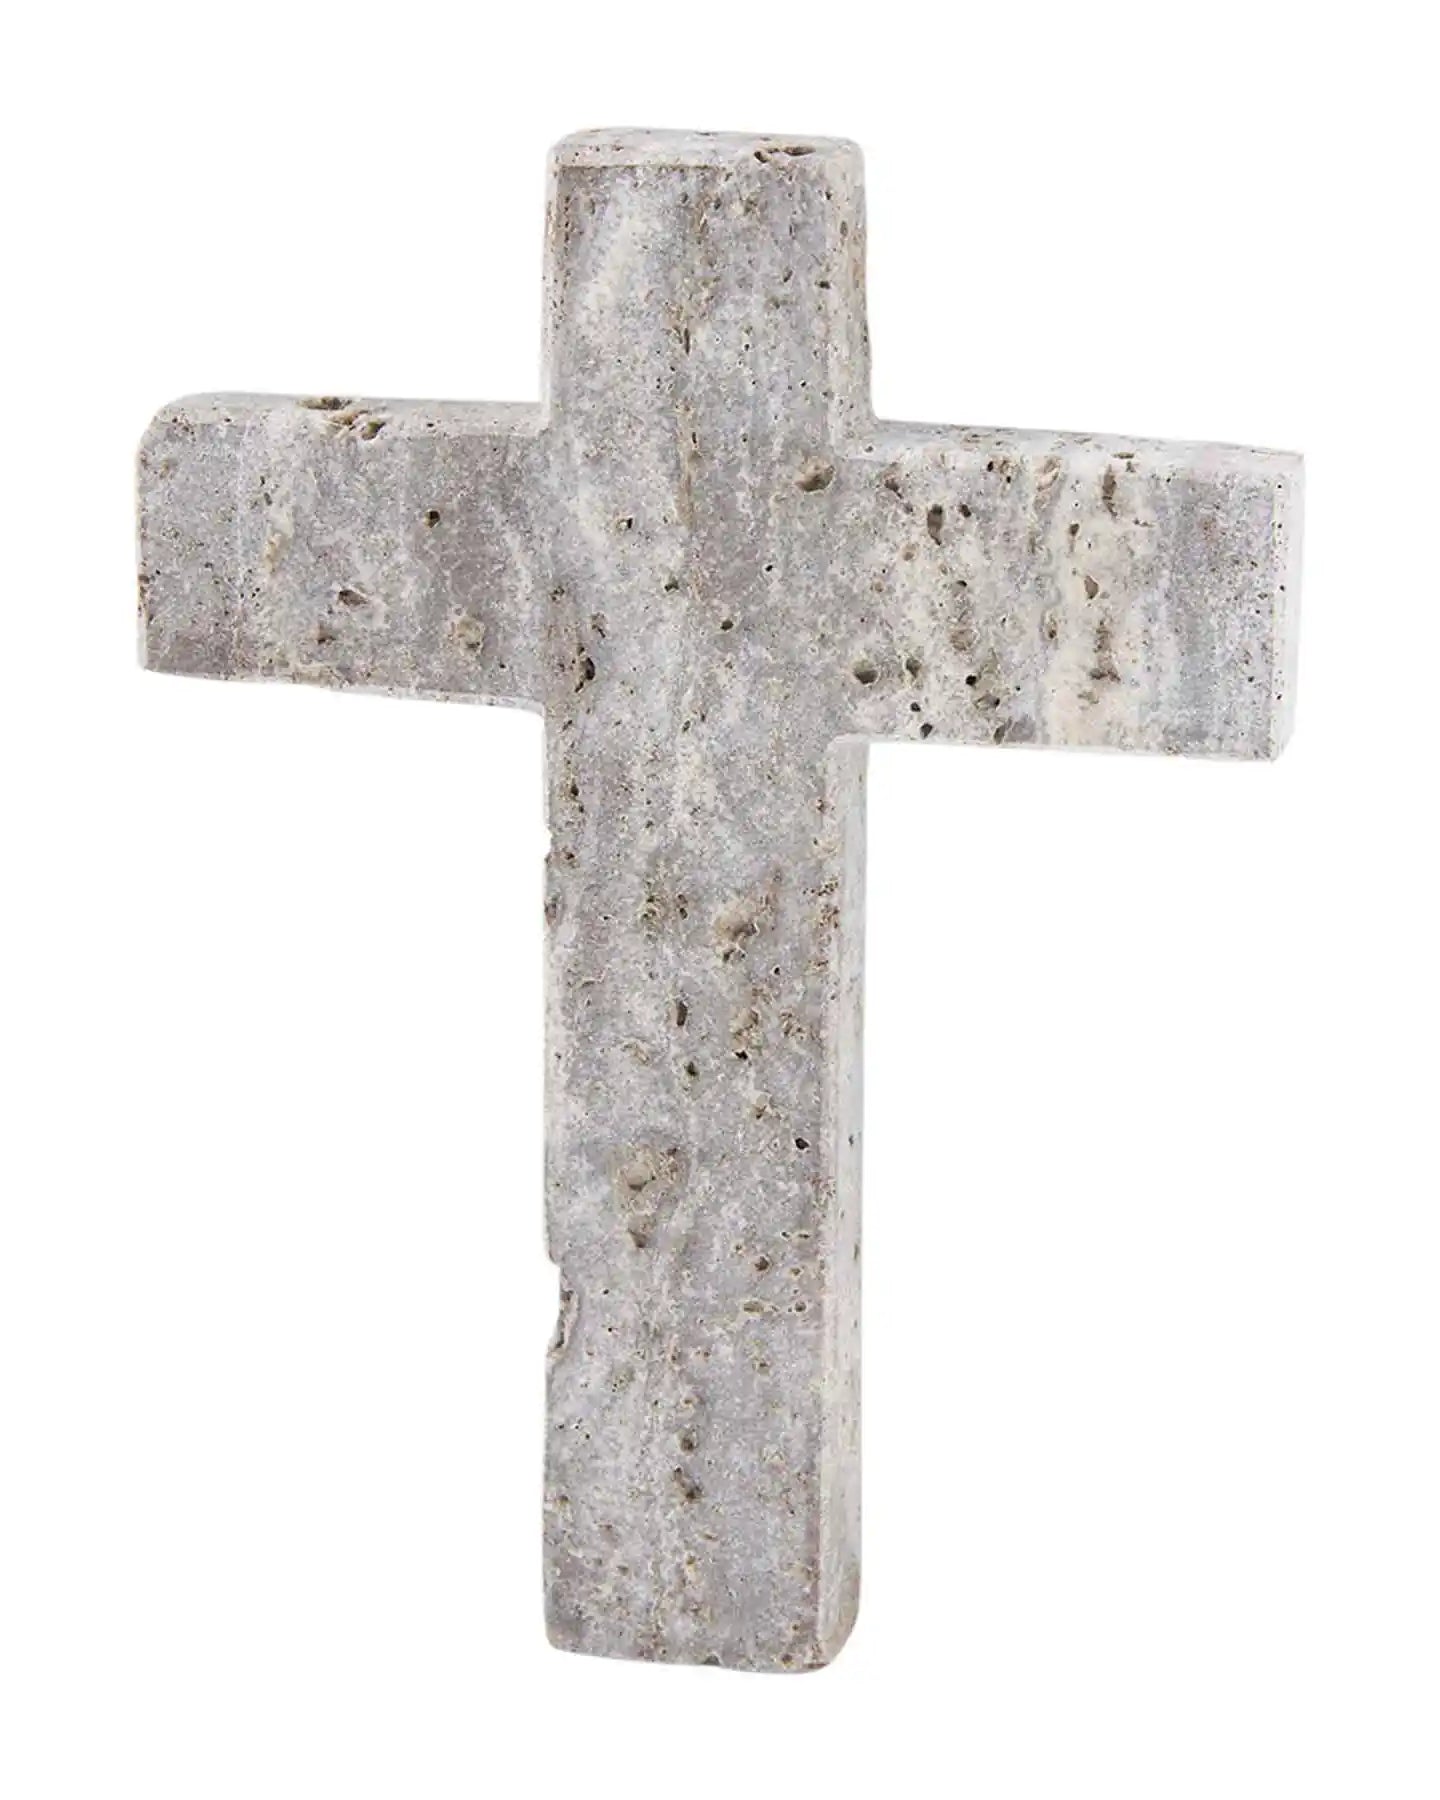 Gray Travertine Cross